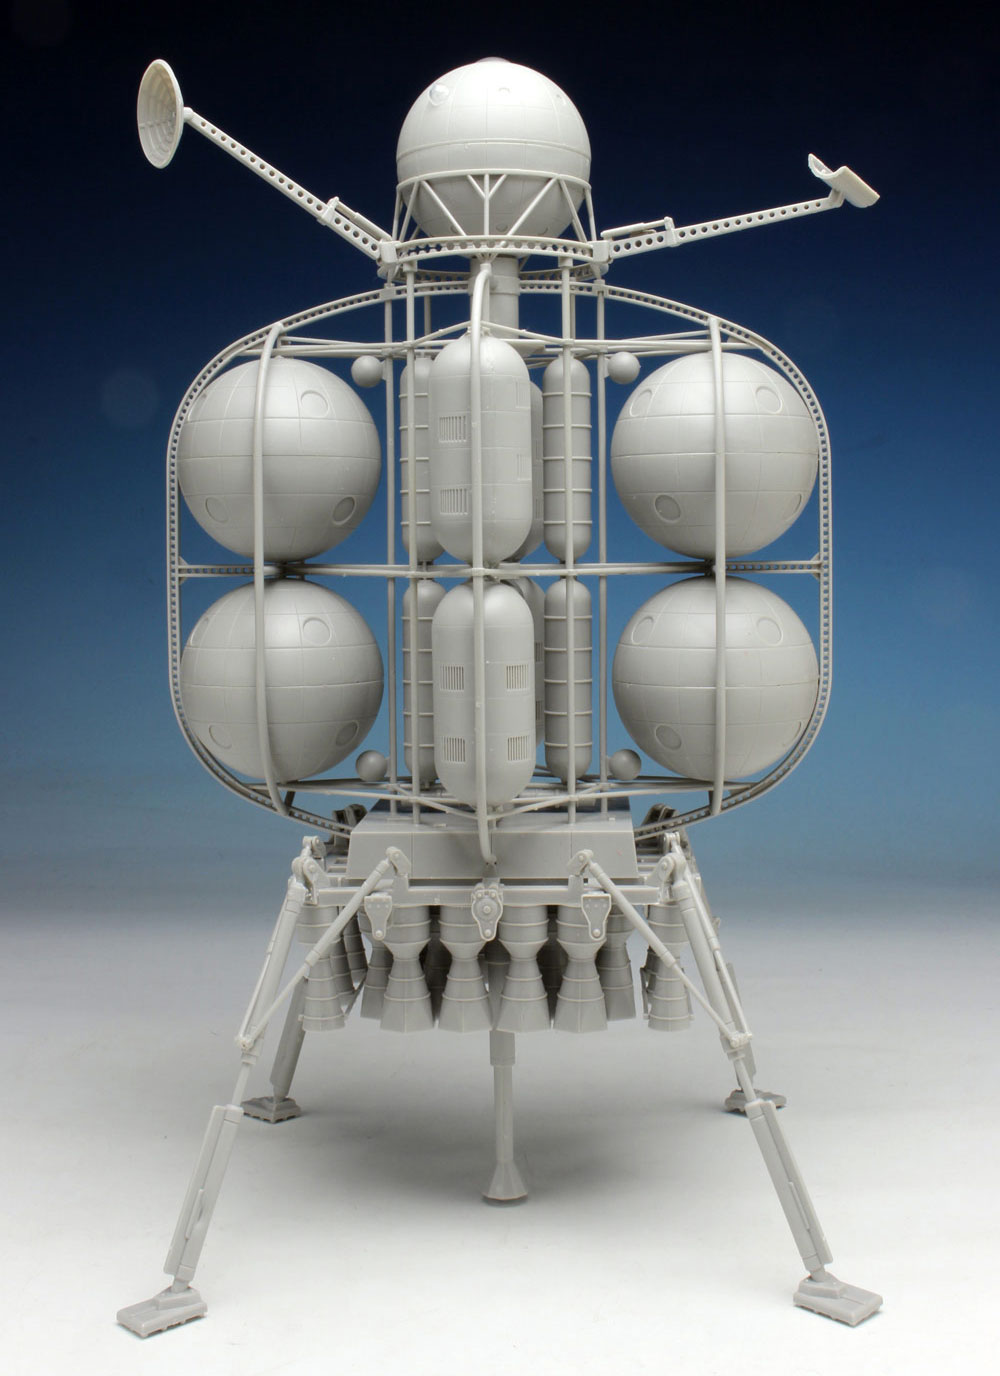 ムーンランダー フォン・ブラウン博士の月面探査機 プラモデル (ペガサスホビー プラスチックモデルキット No.9109) 商品画像_1